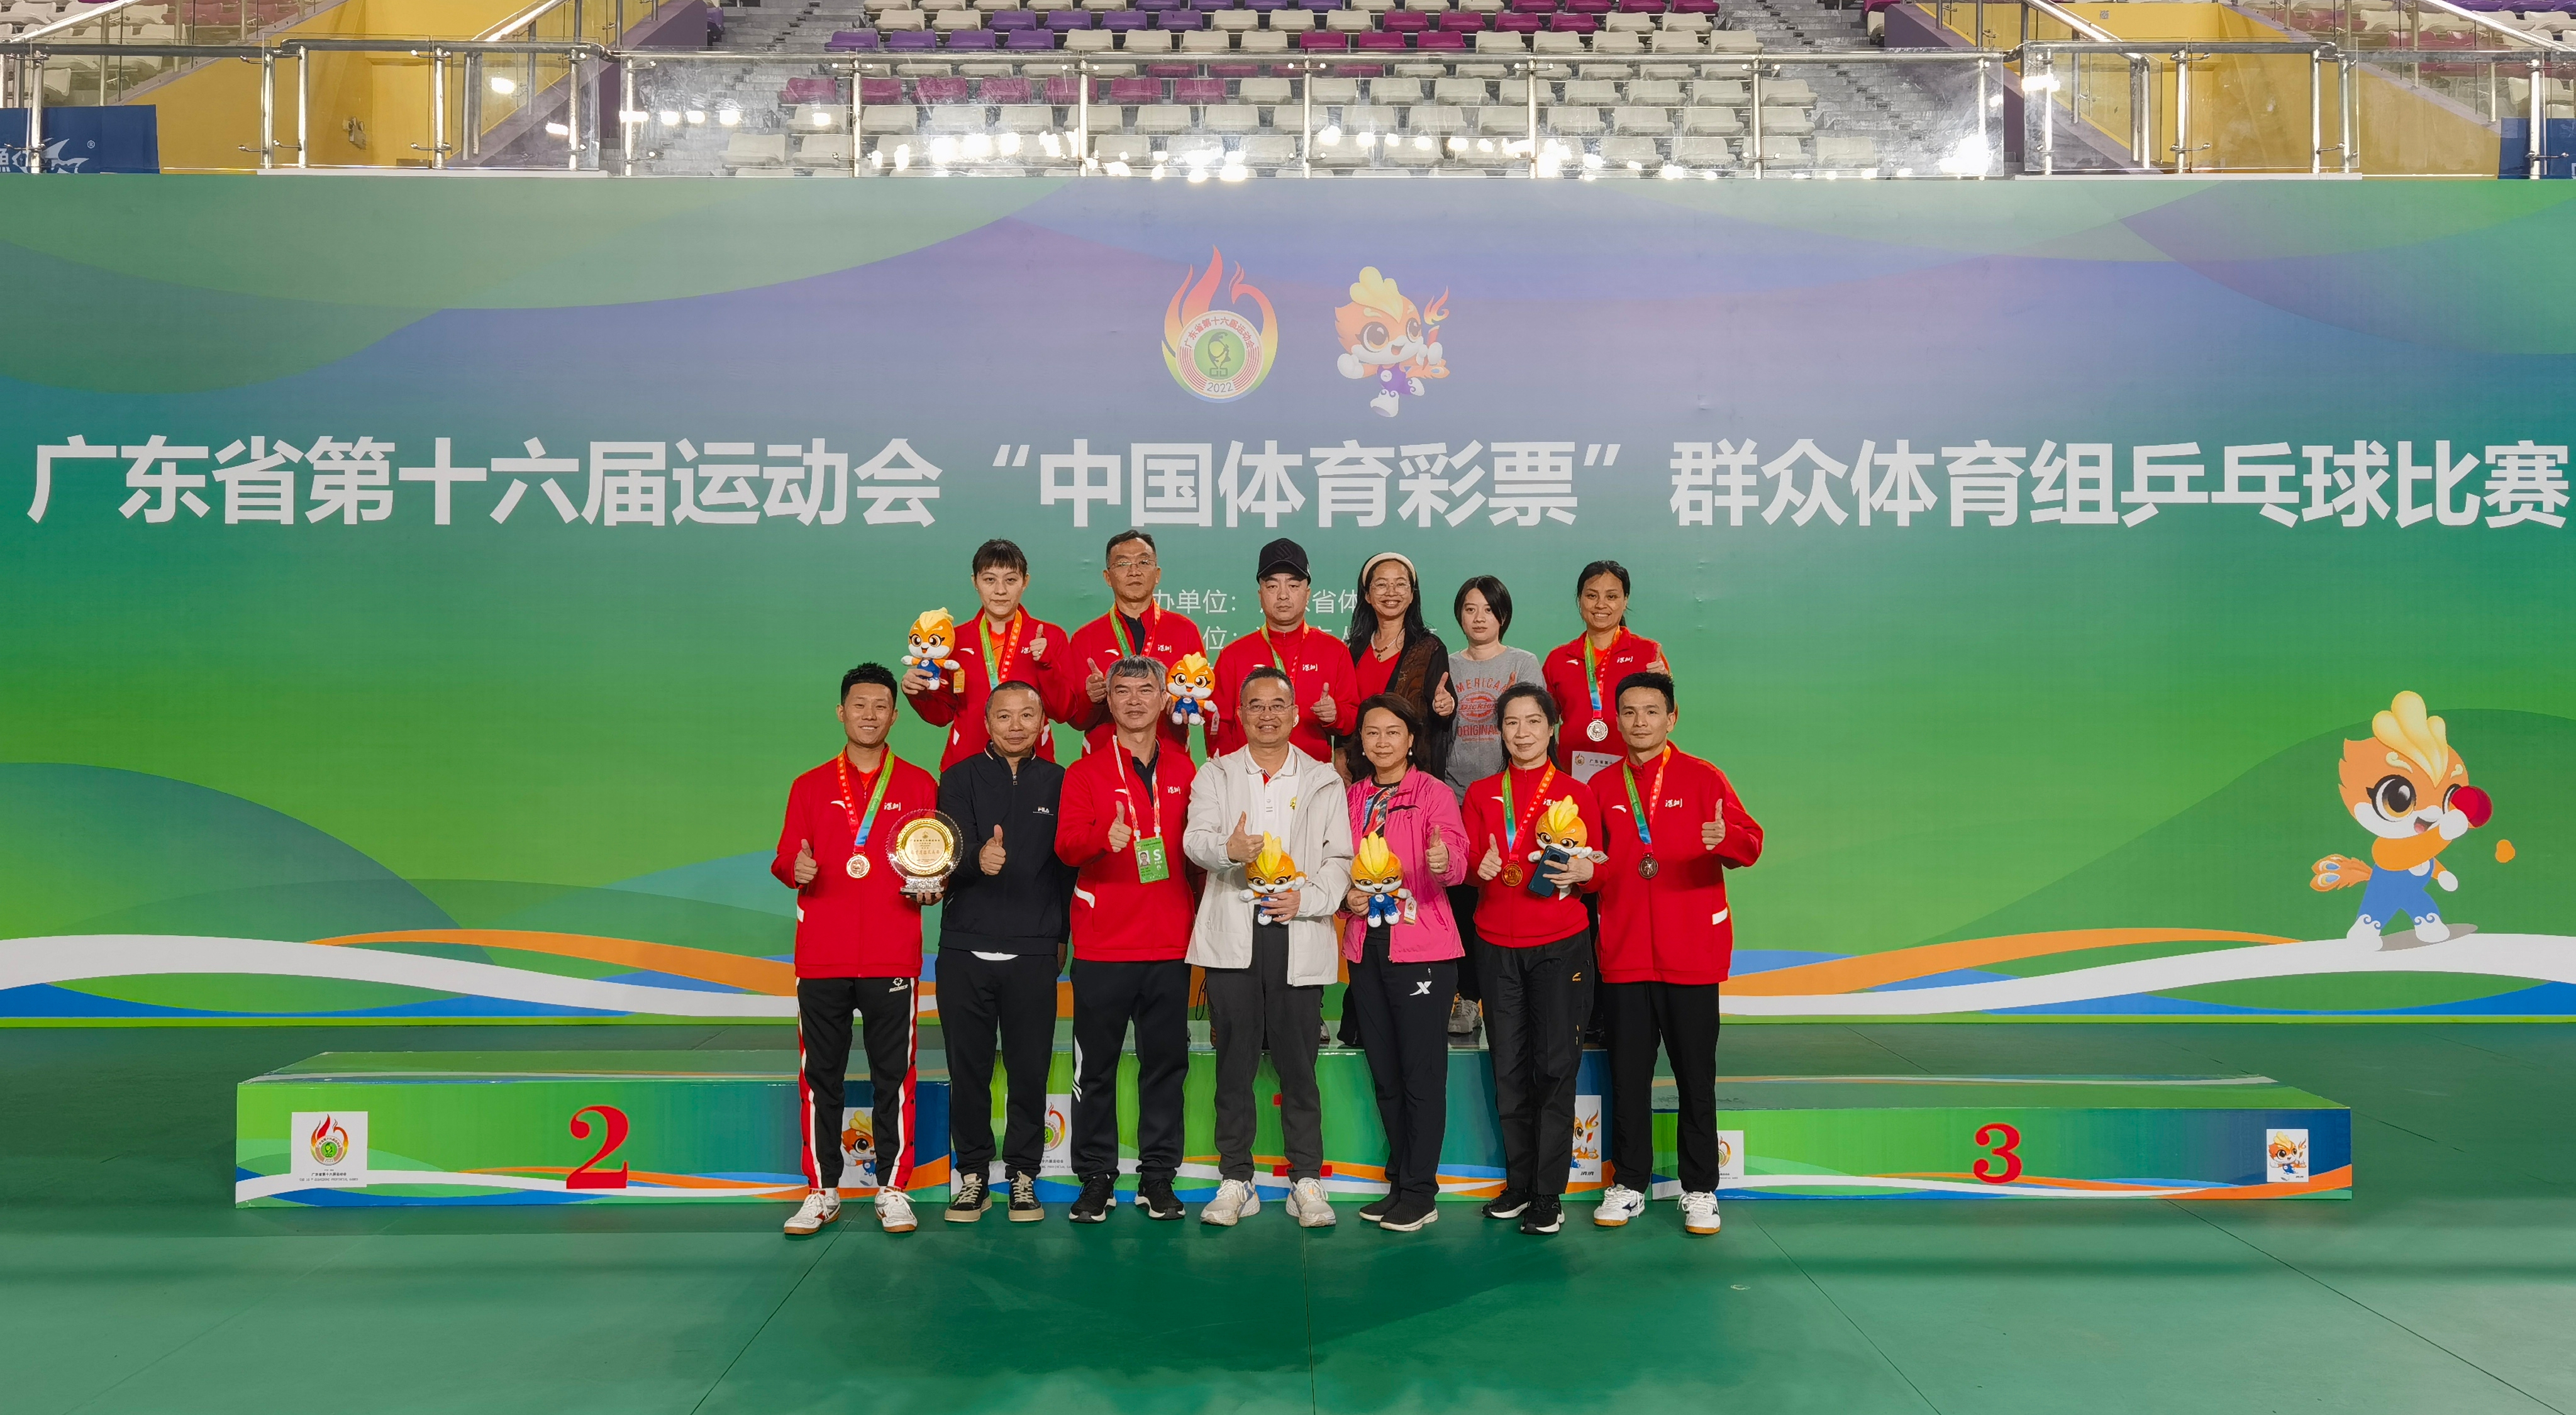 省運含金量|省運會乒乓球群體賽收官 深圳隊喜獲雙豐收